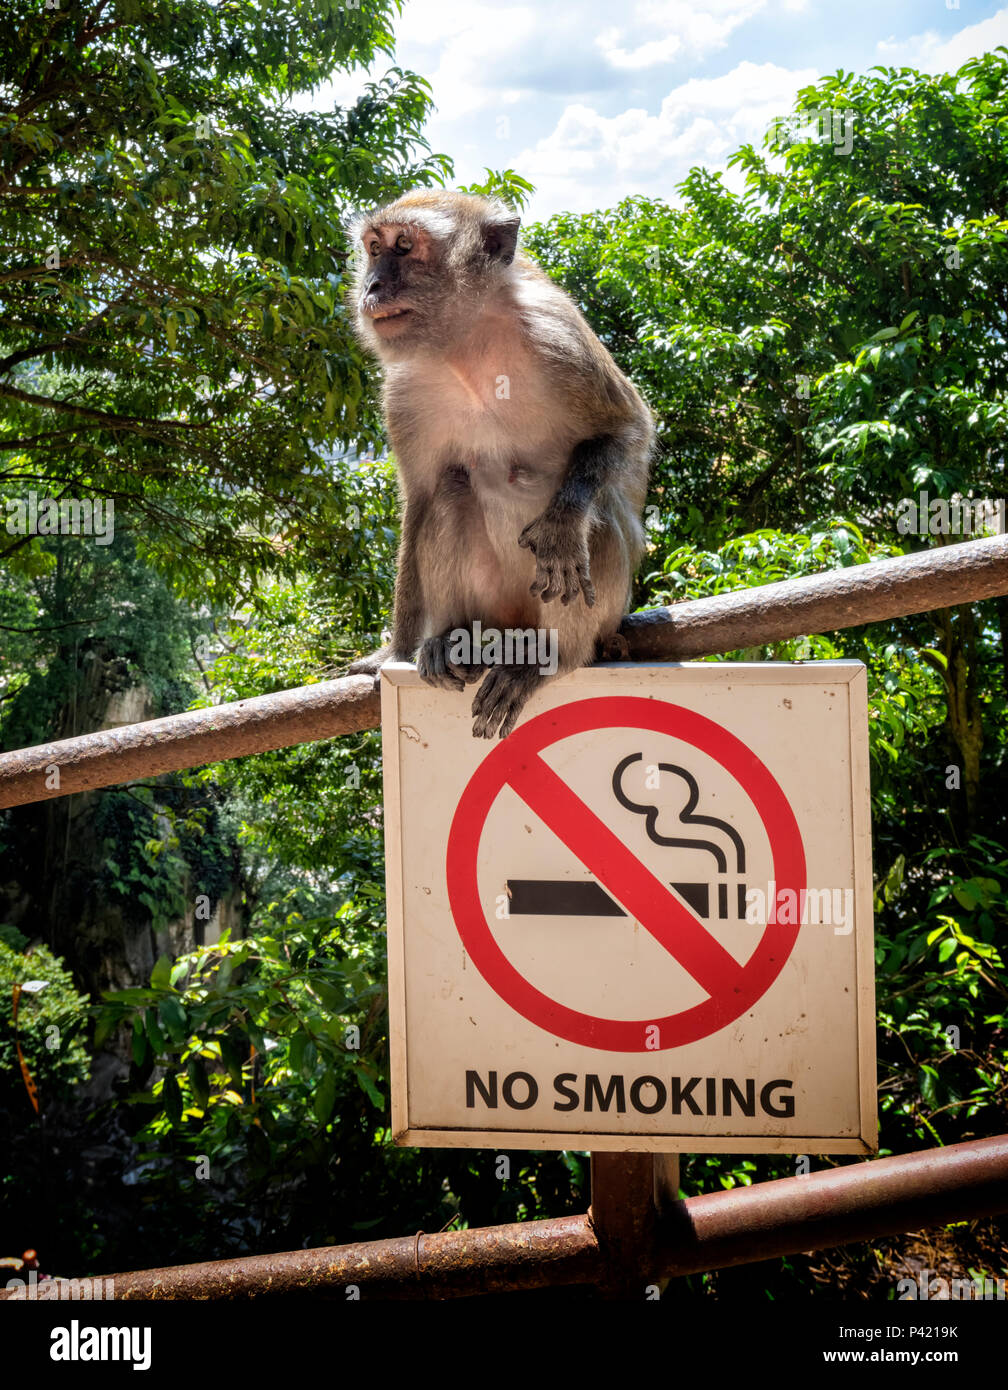 Les jeunes macaques à longue queue assis sur d'interdiction de fumer dans les grottes de Batu, Selangor, Malaisie Banque D'Images